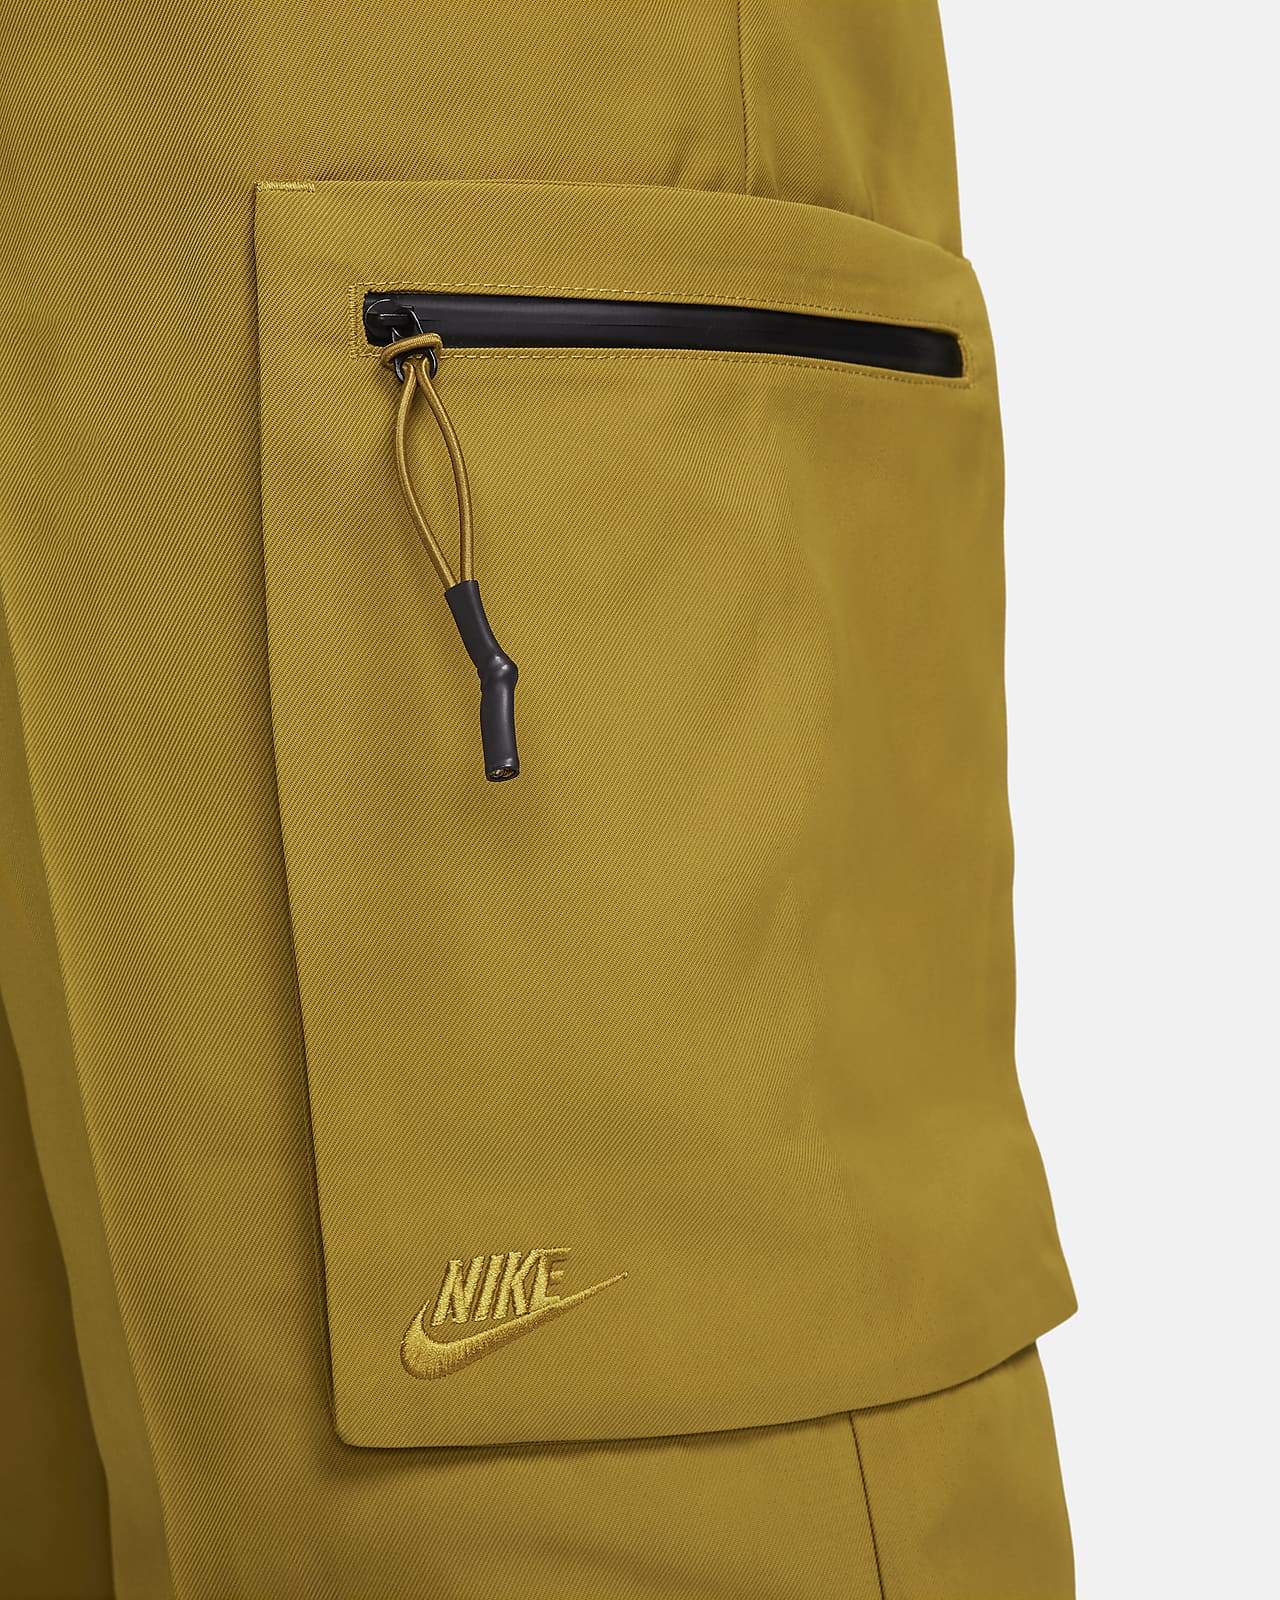 Nike Sportswear Utility Woven Trousers